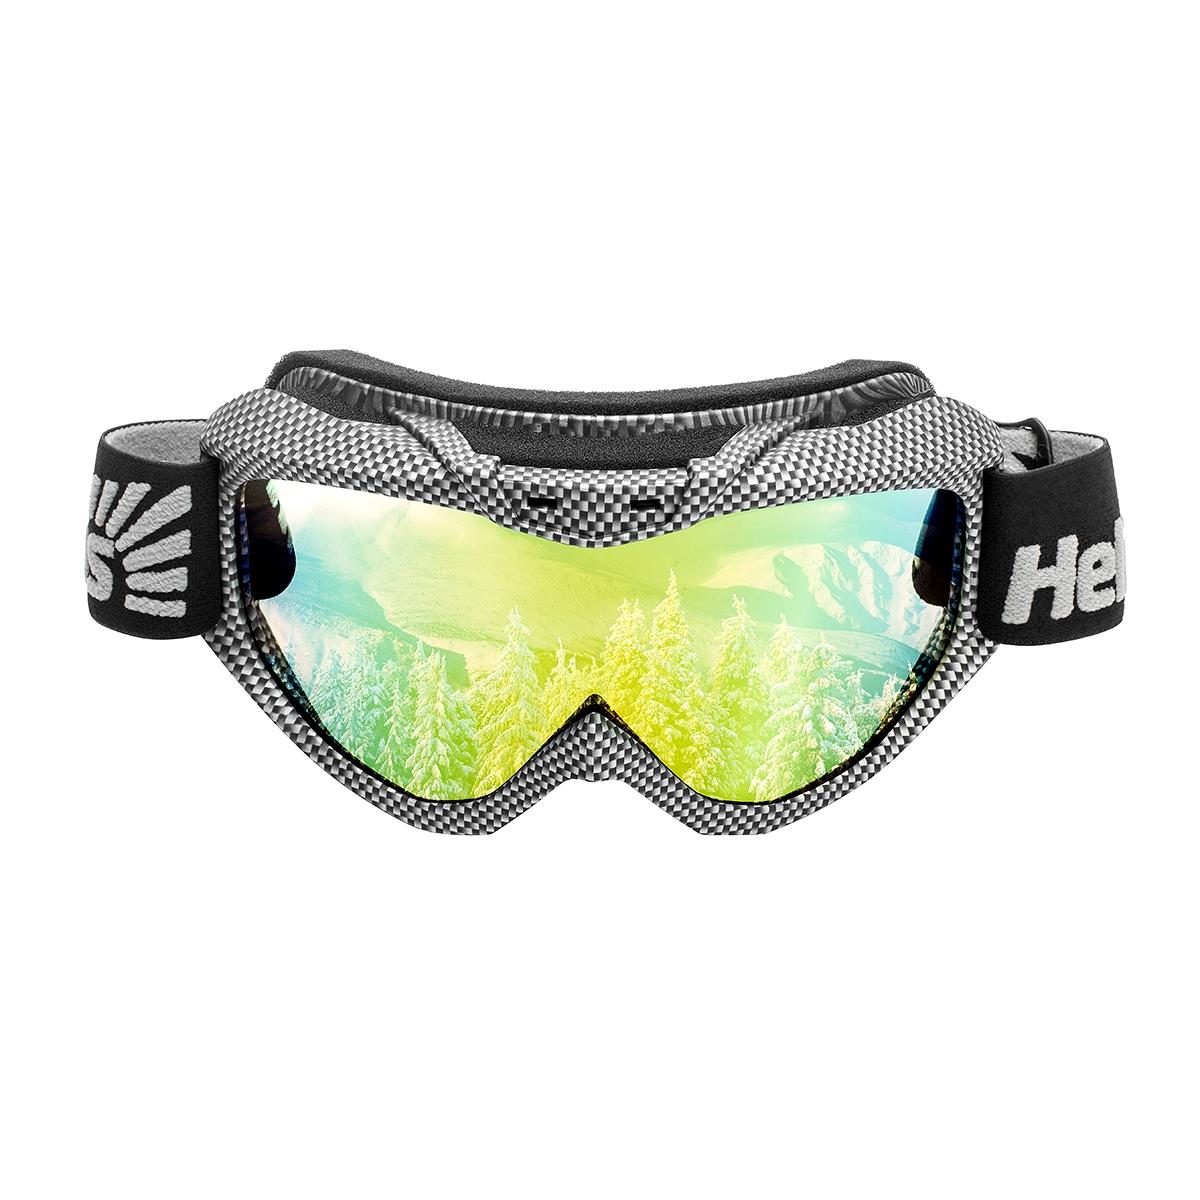 Очки горнолыжные HS-MT-001 Helios очки виртуальной реальности google из картона для смартфонов